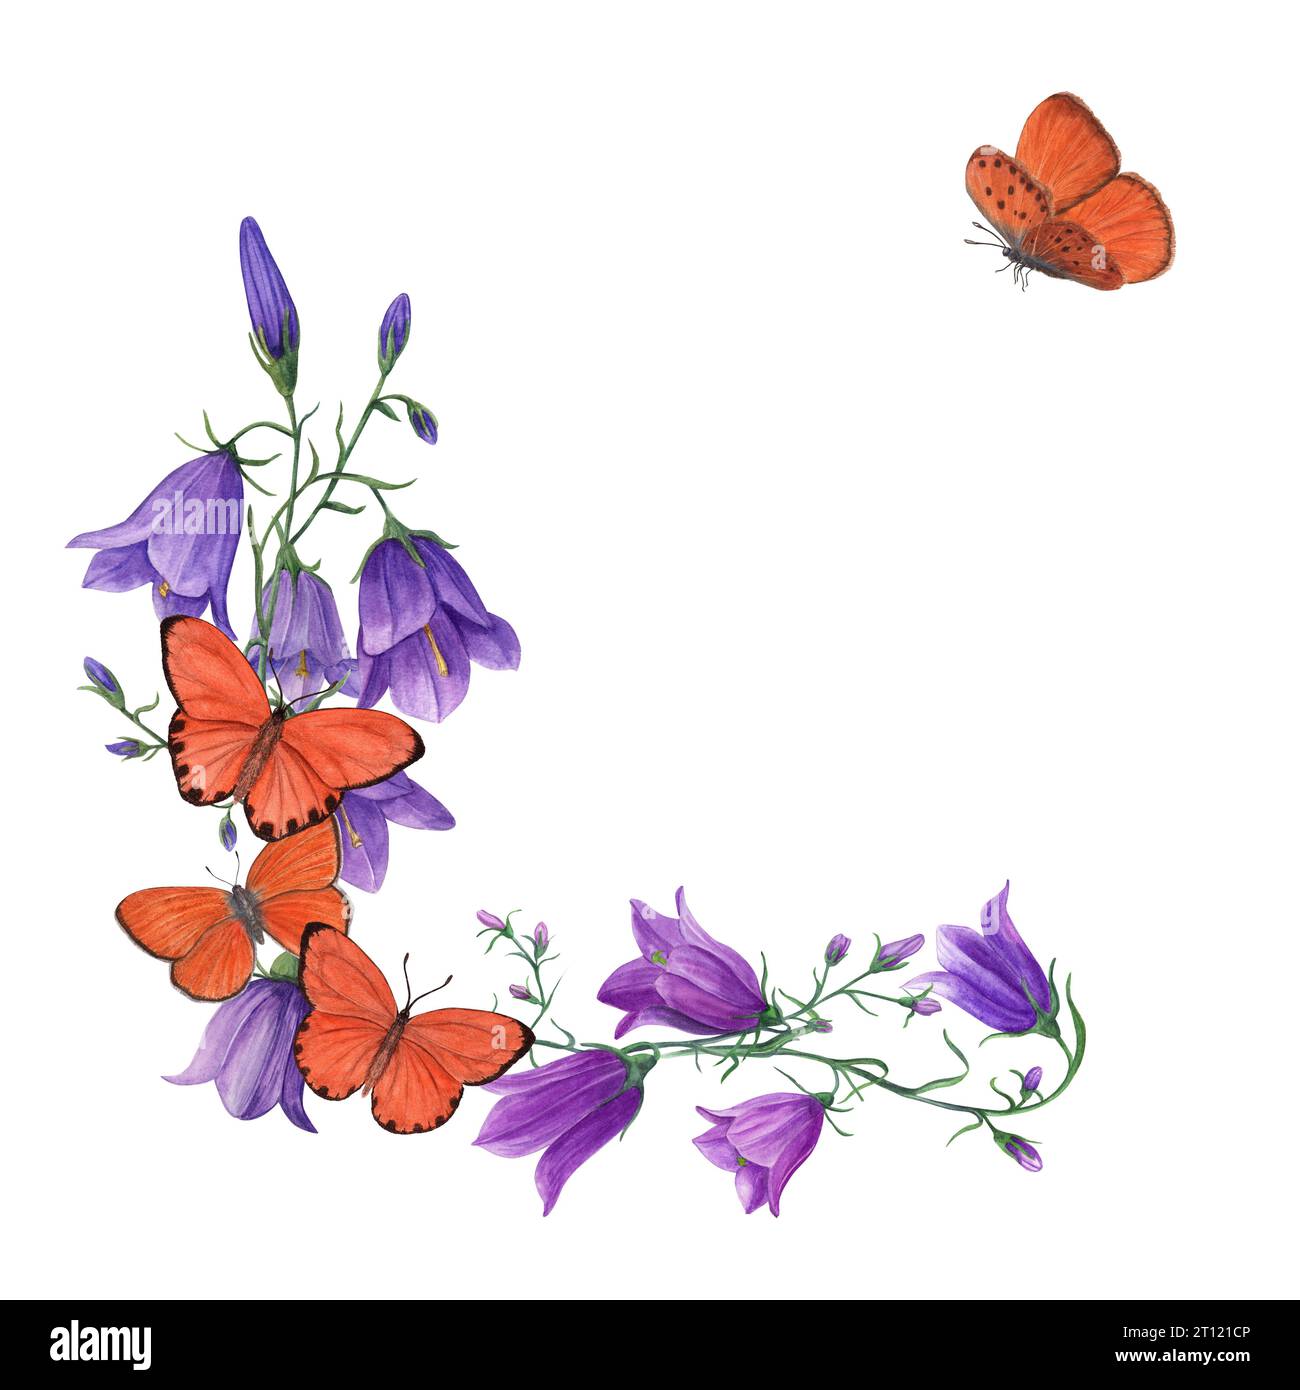 Glockenblumen und fliegende Schmetterlinge in Aquarellfarben. Campanula, Harebell, Orangenschmetterlinge. Botanische Malerei für Postkartendesign, Einladungsvorlage Stockfoto